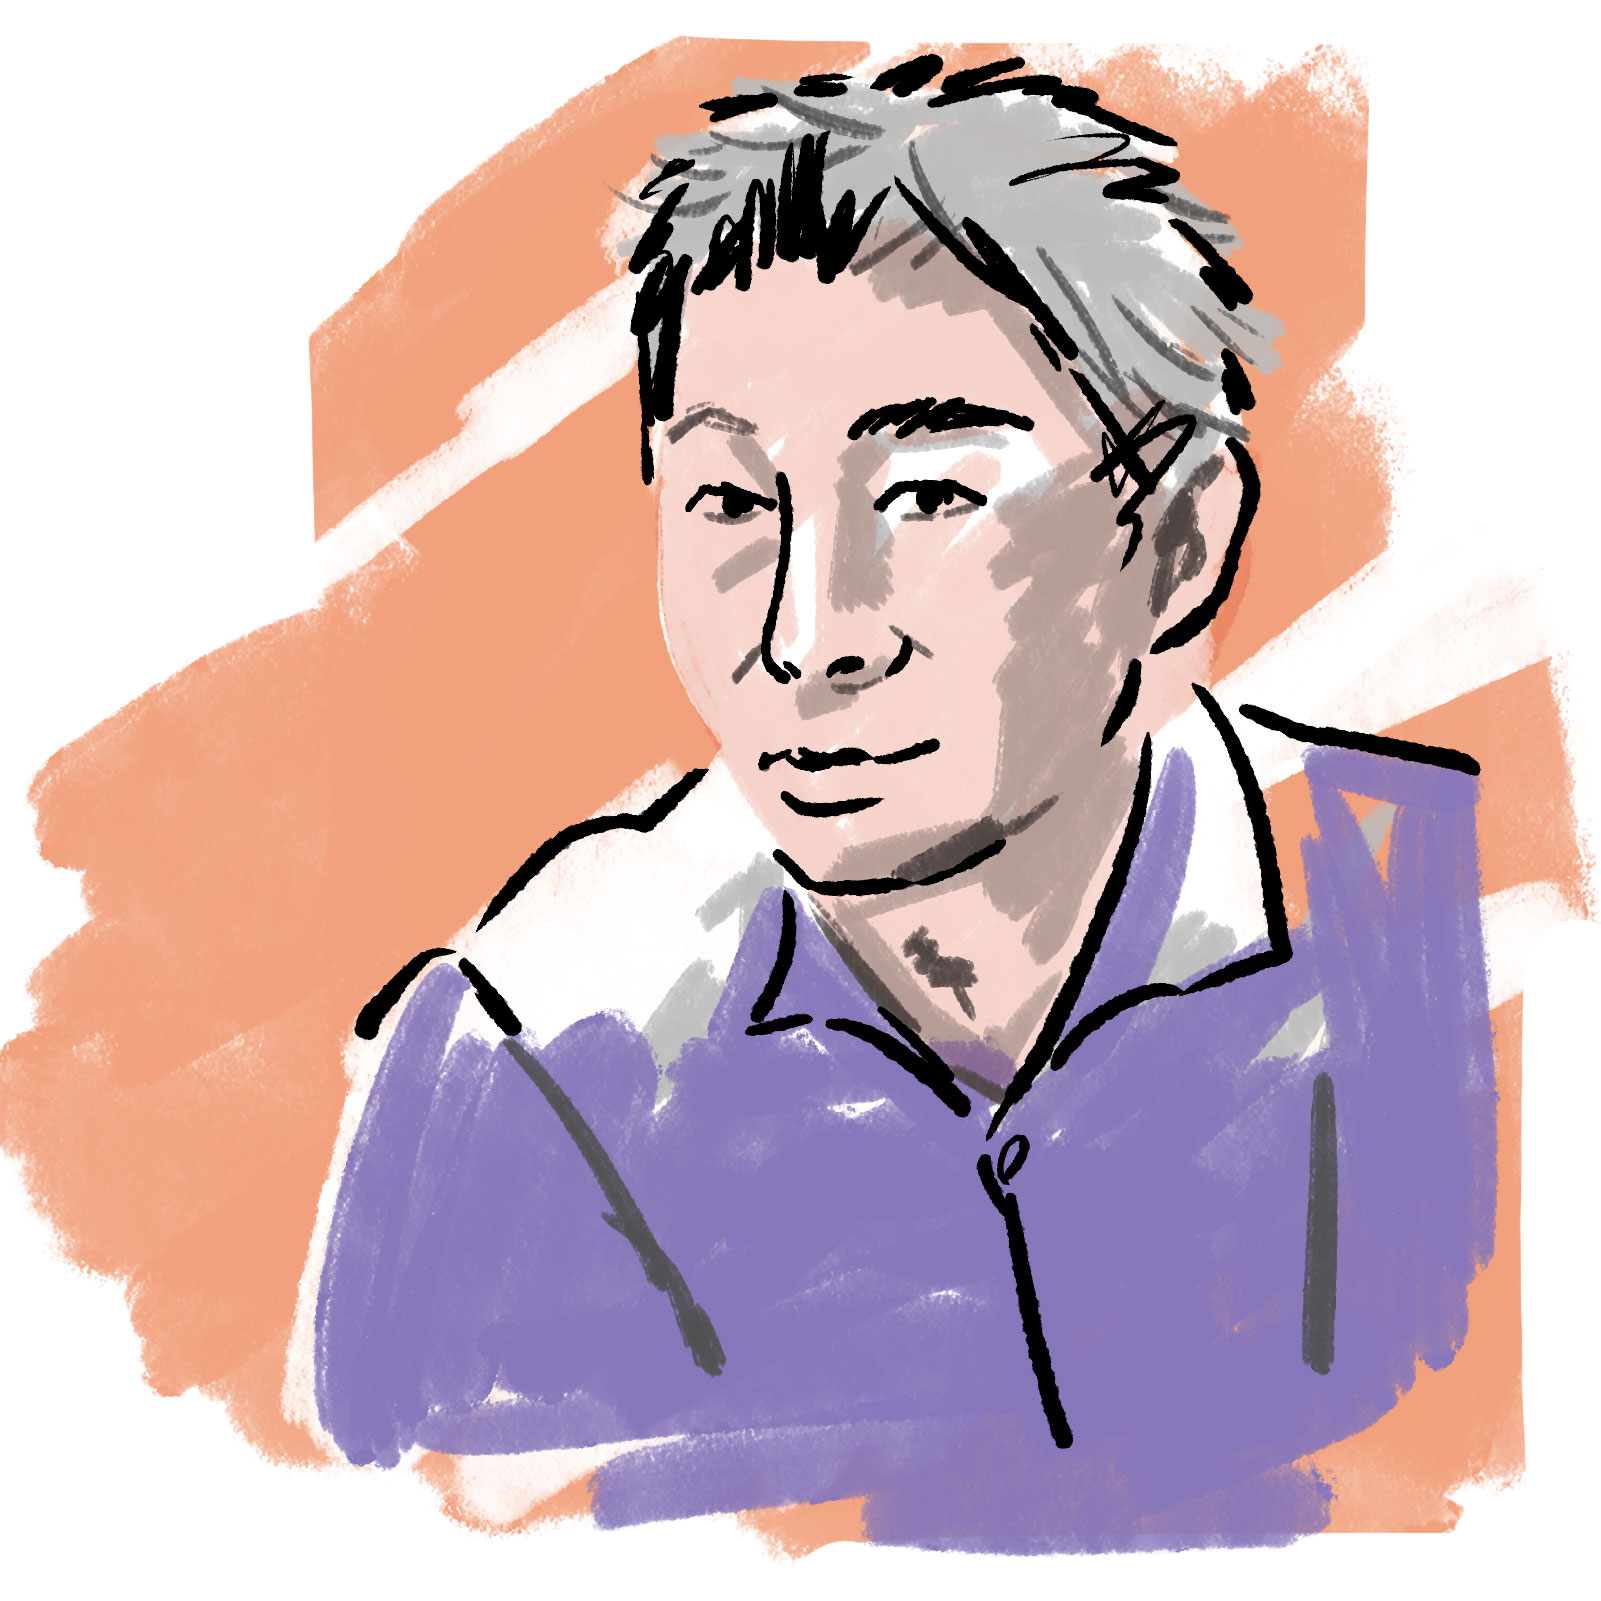 NTTコミュニケーション科学基礎研究所 人間情報研究部 上席特別研究員渡邊 淳司を描いた顔写真のイラスト